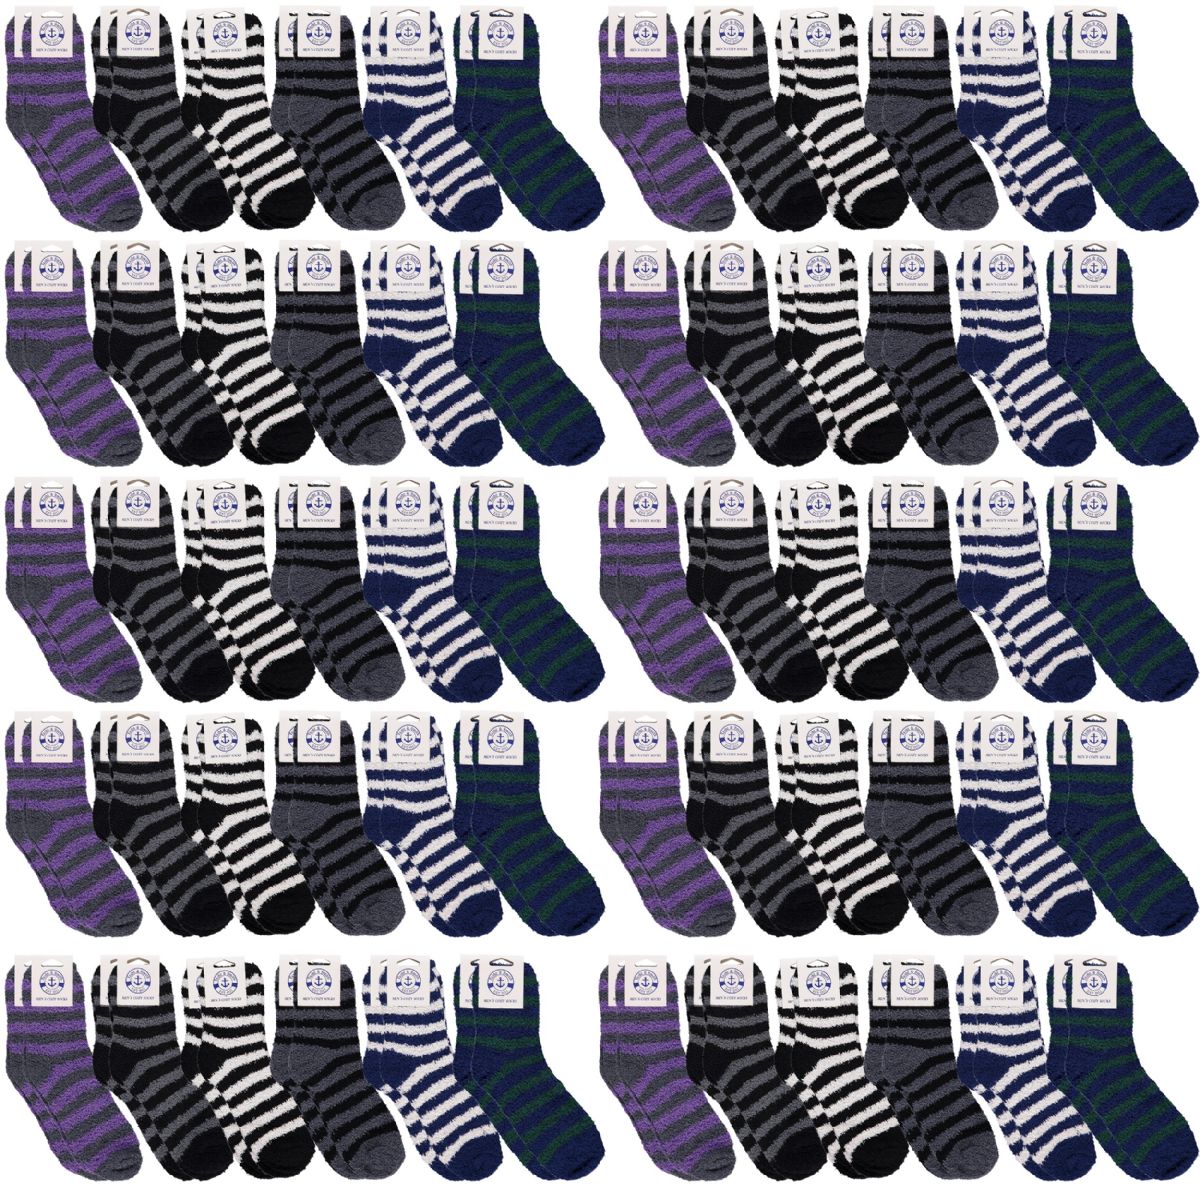 60 Pieces Men's Fuzzy Socks Striped Super Soft Warm - Men's Fuzzy Socks